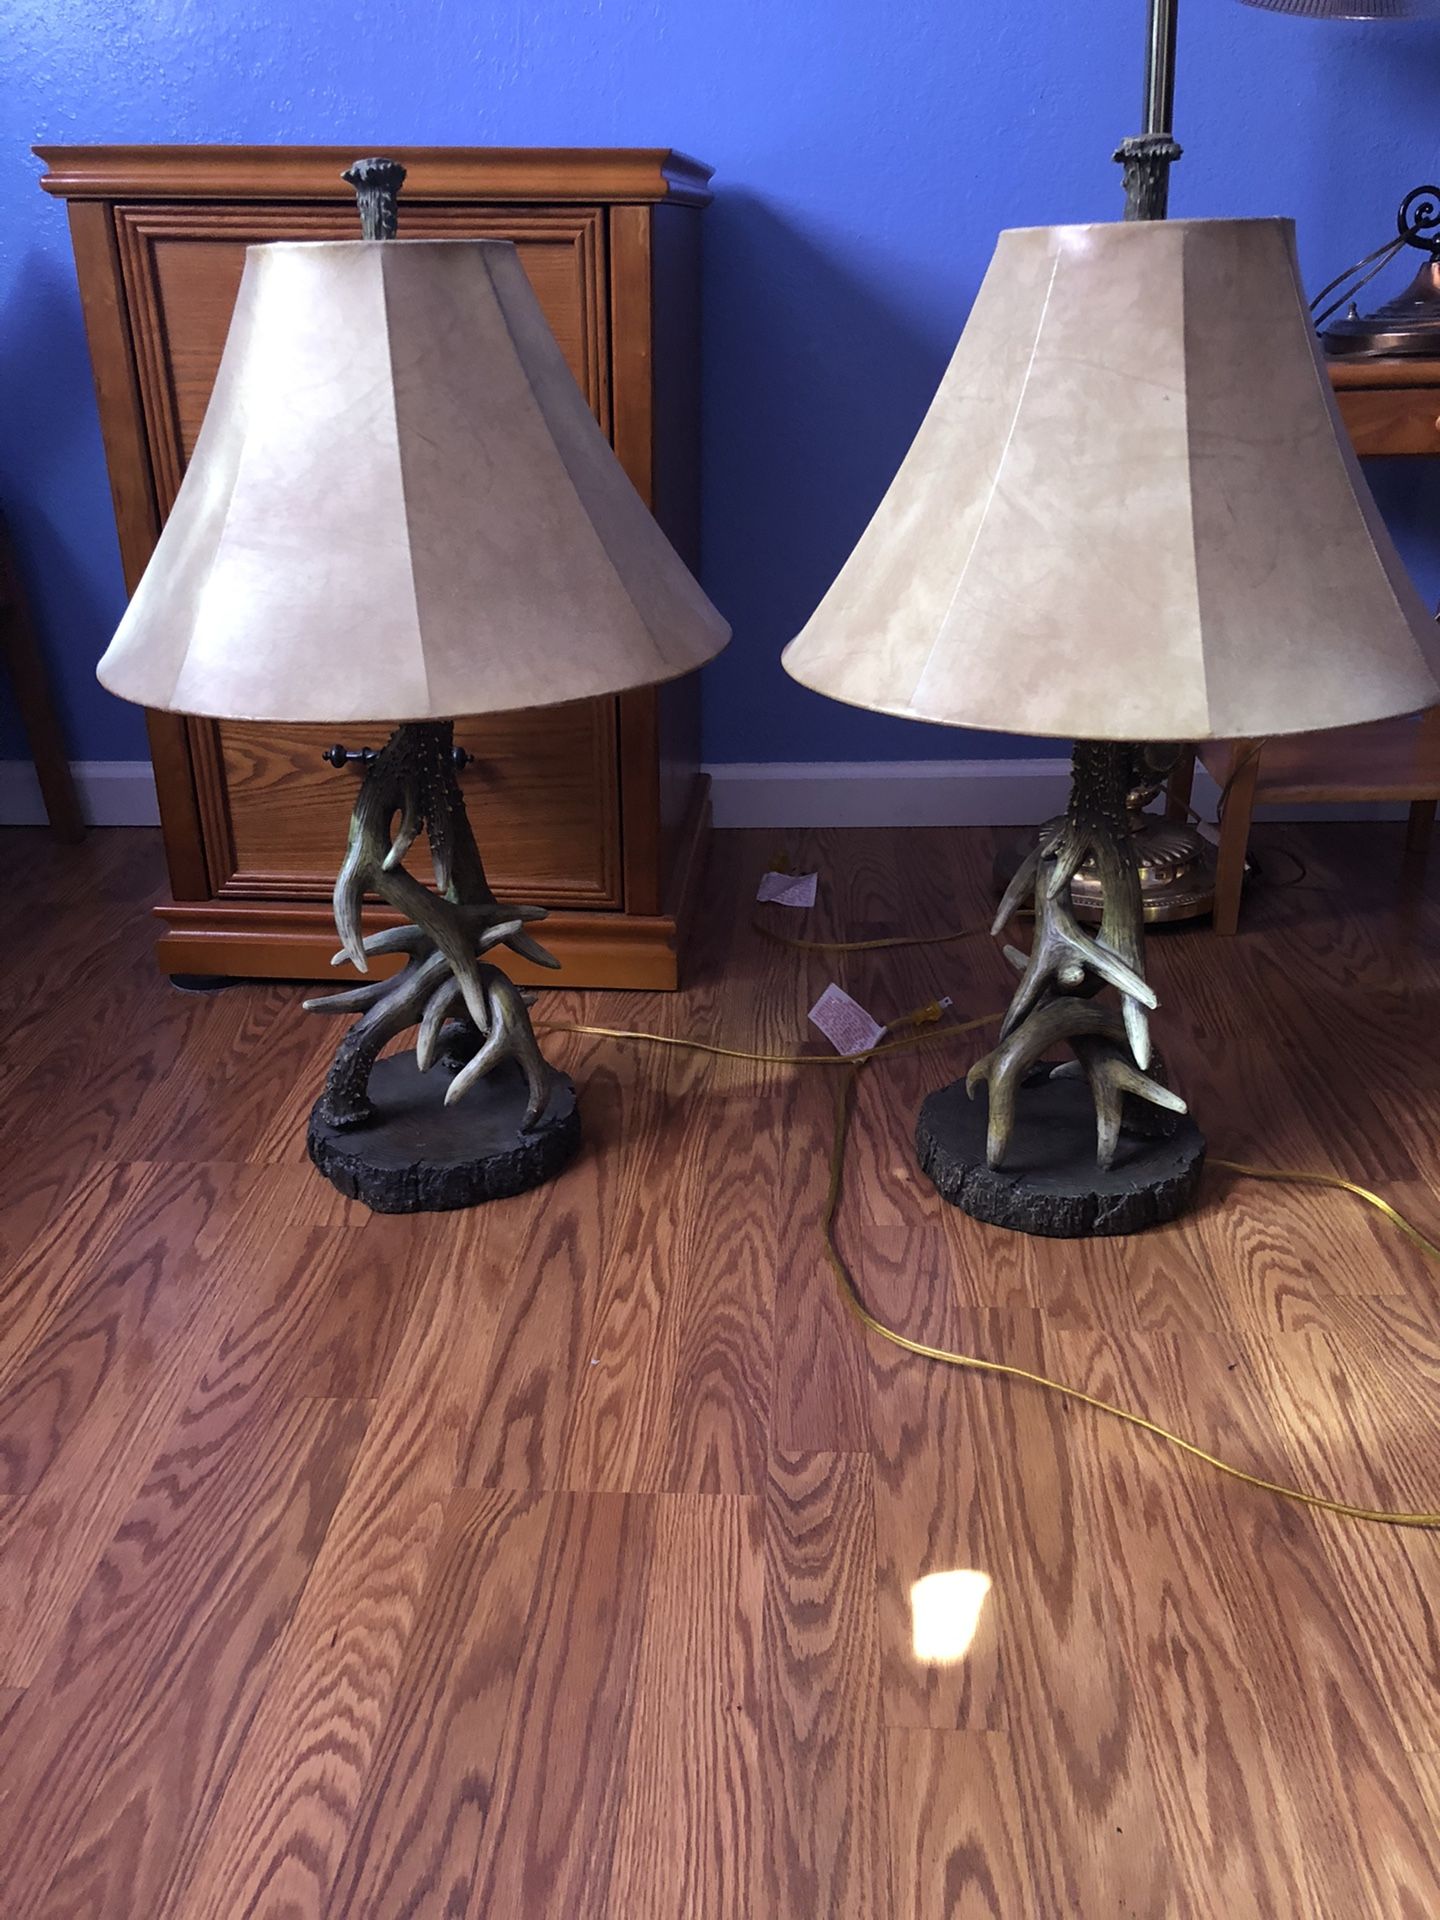 Antler lamps/ceiling fan